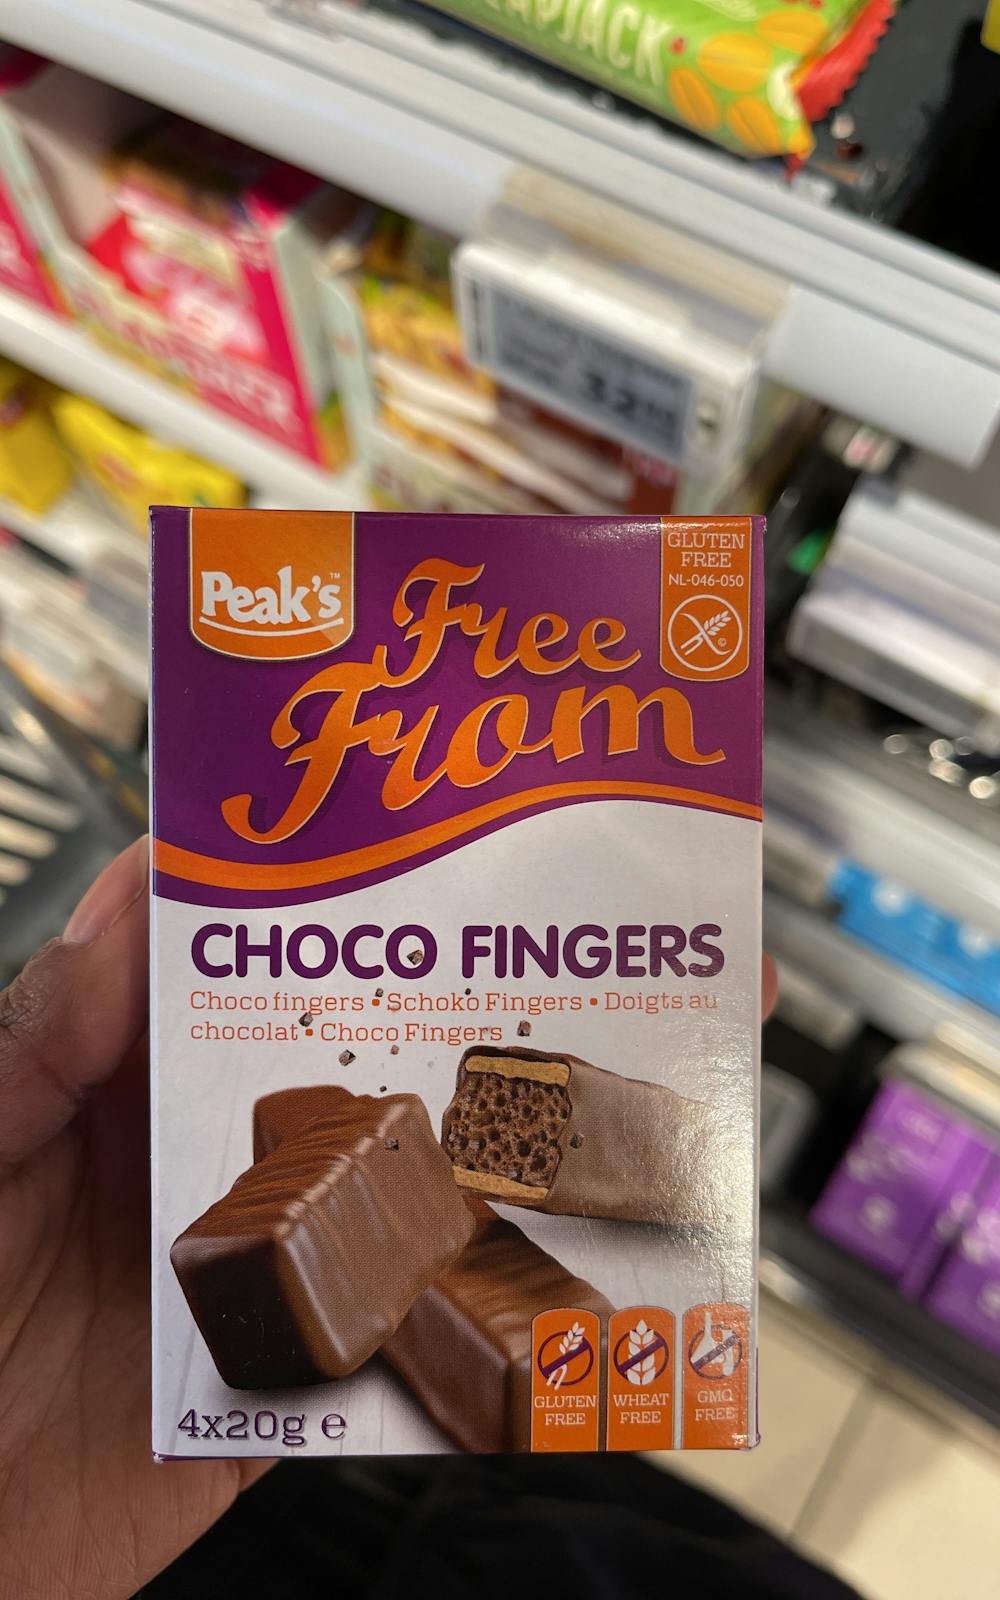 Choco fingers, Peak`s